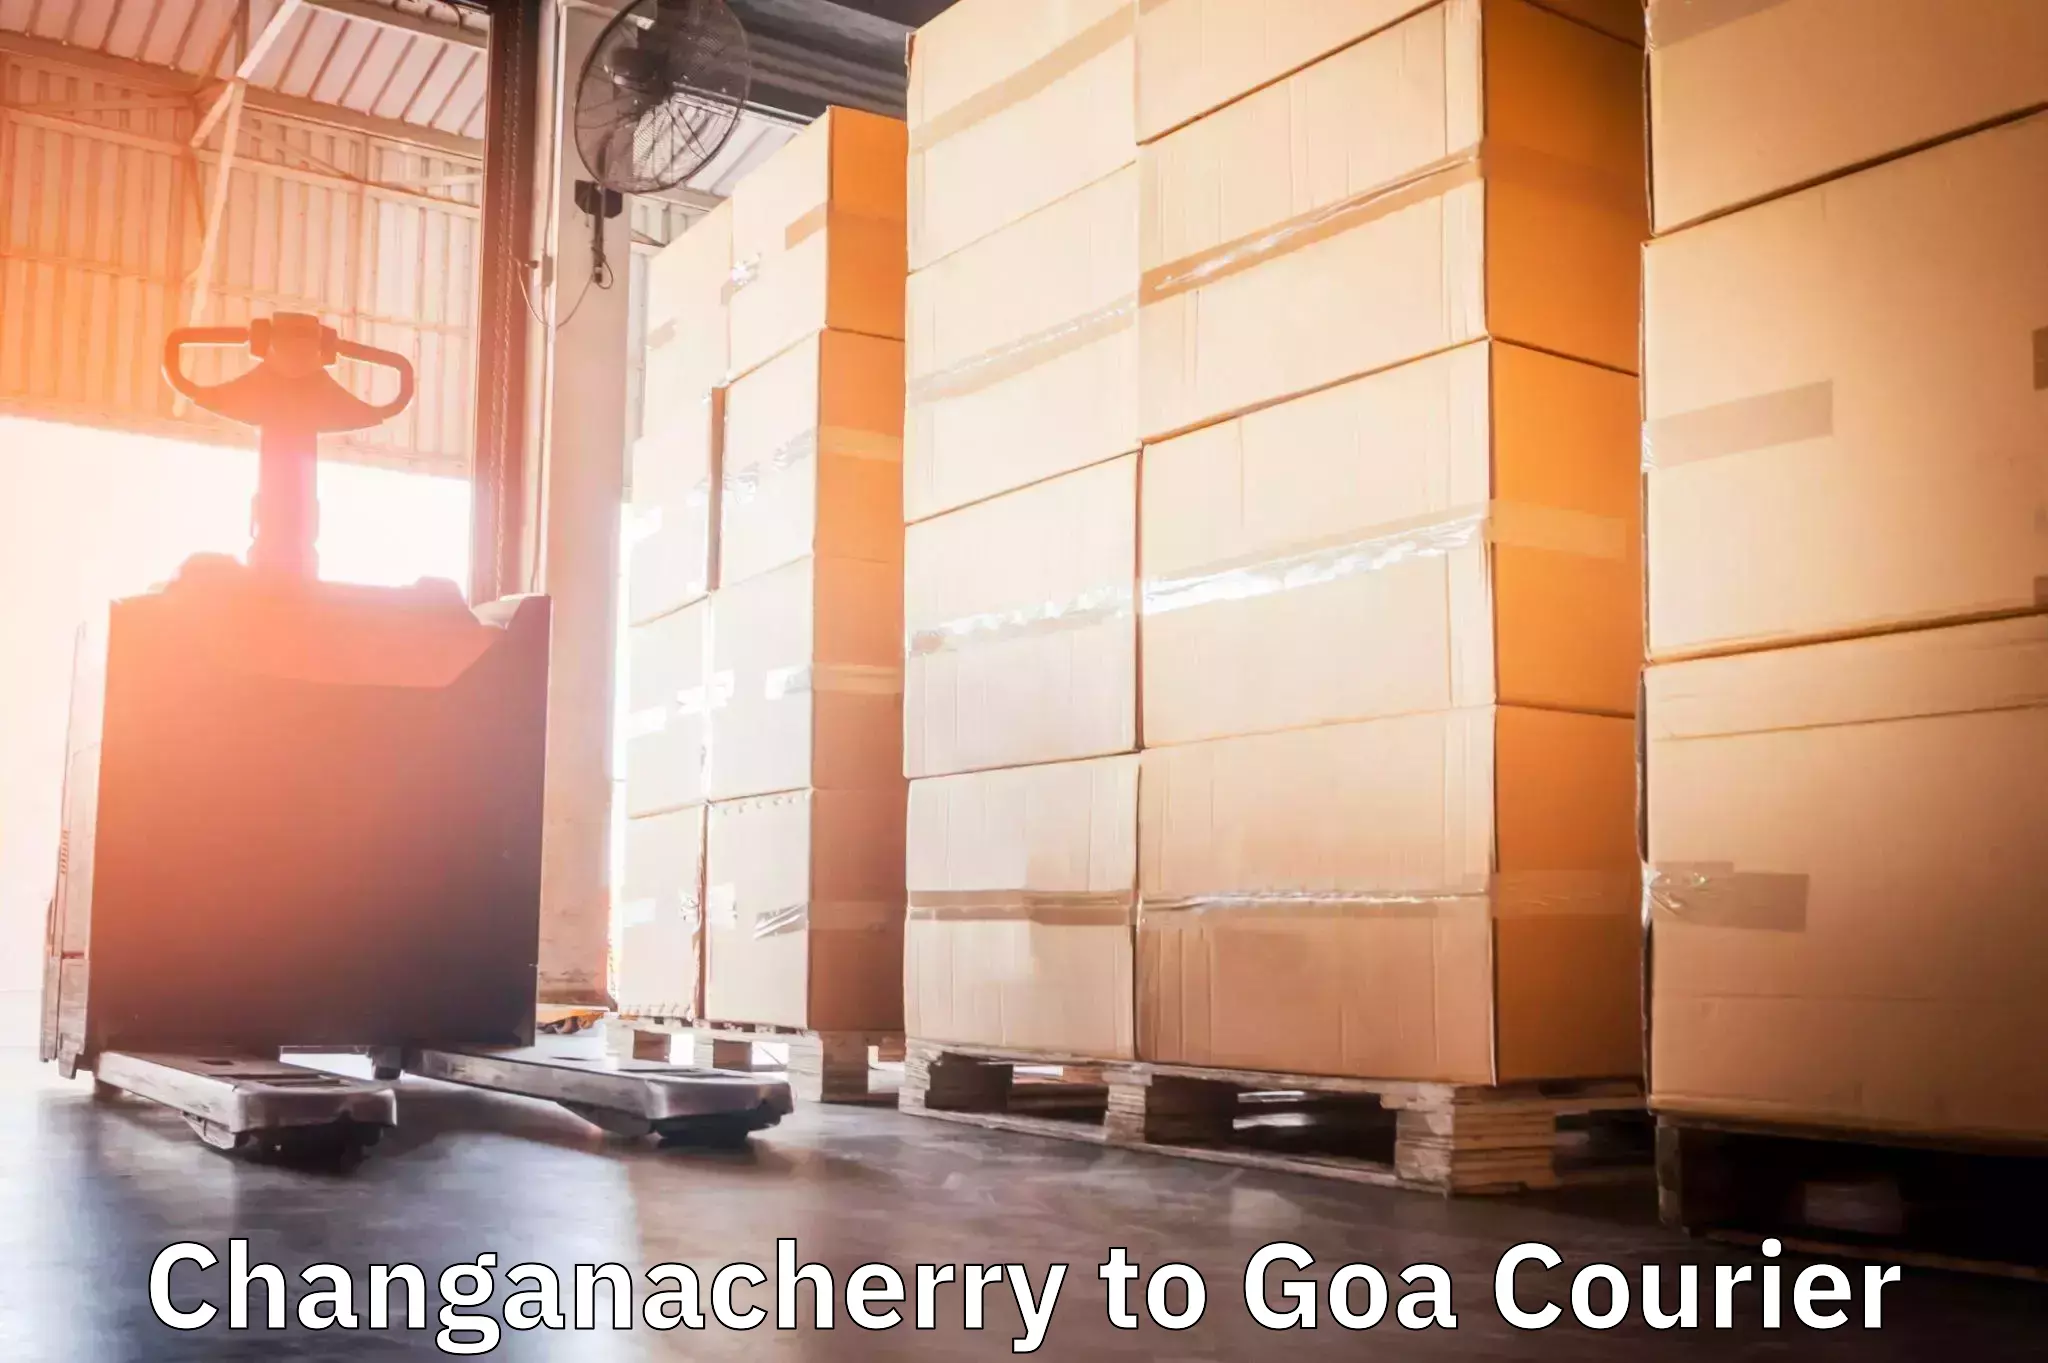 Global delivery options Changanacherry to IIT Goa